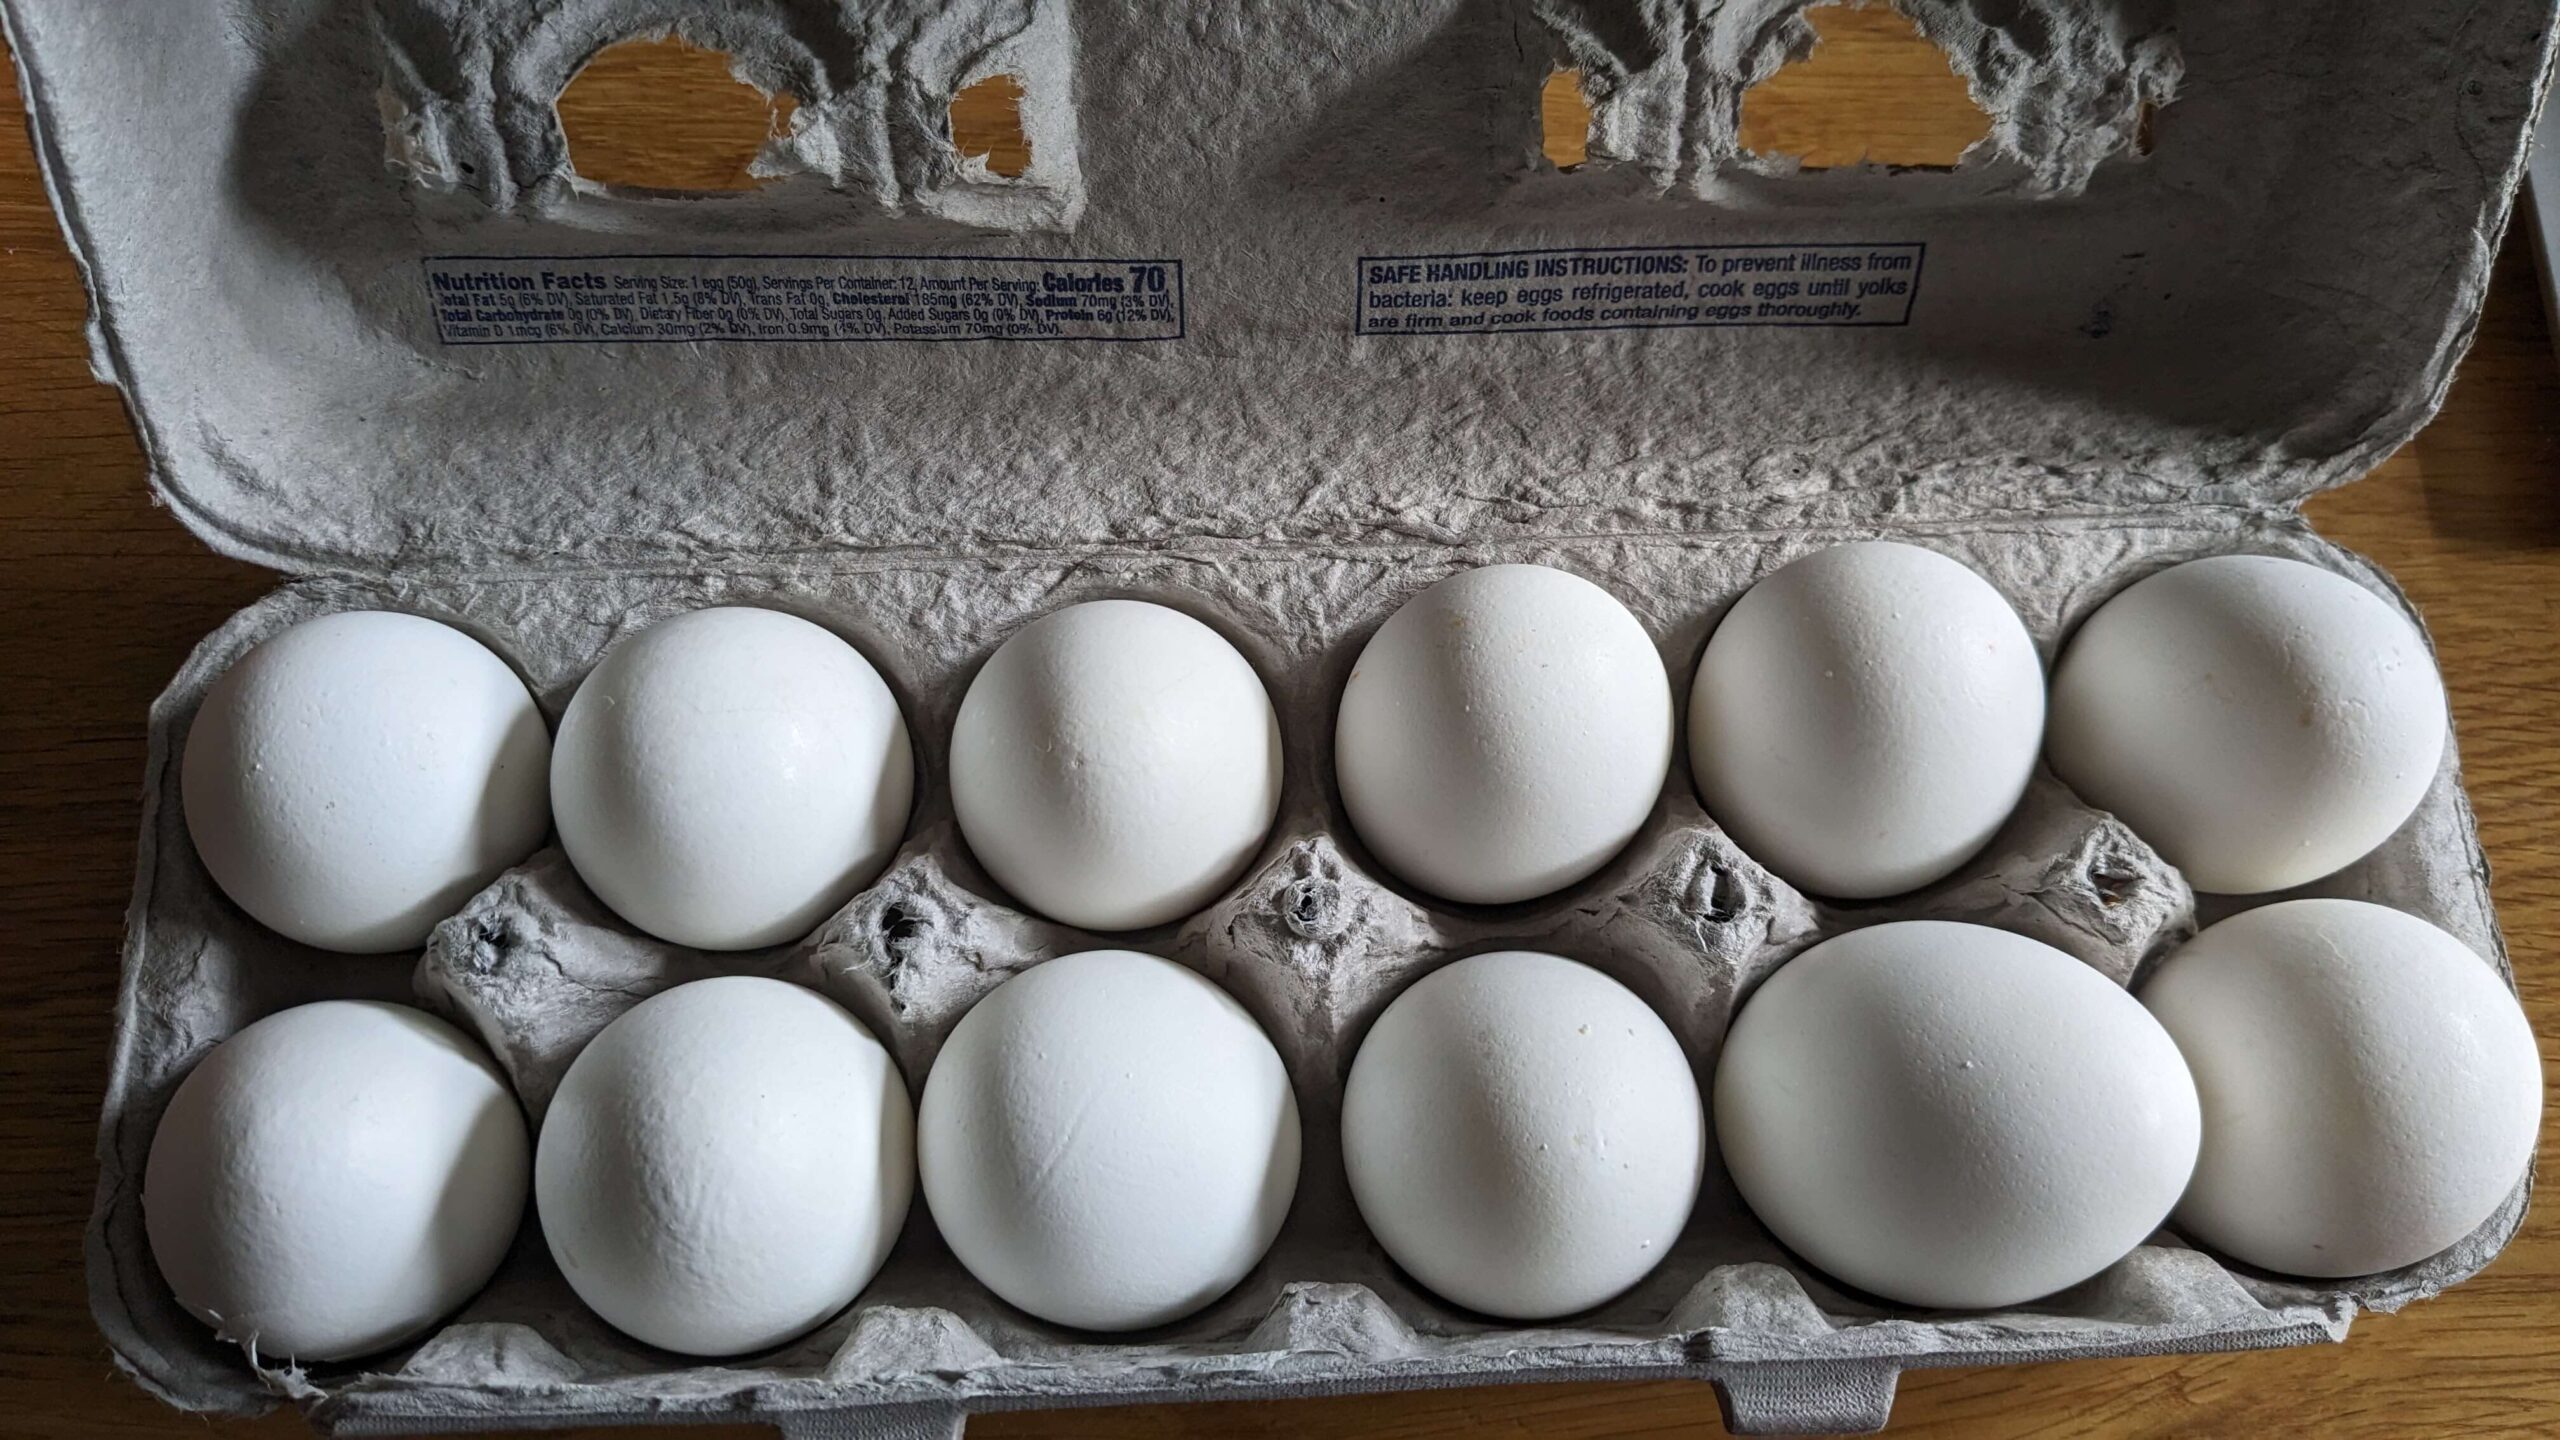 a carton of one dozen eggs